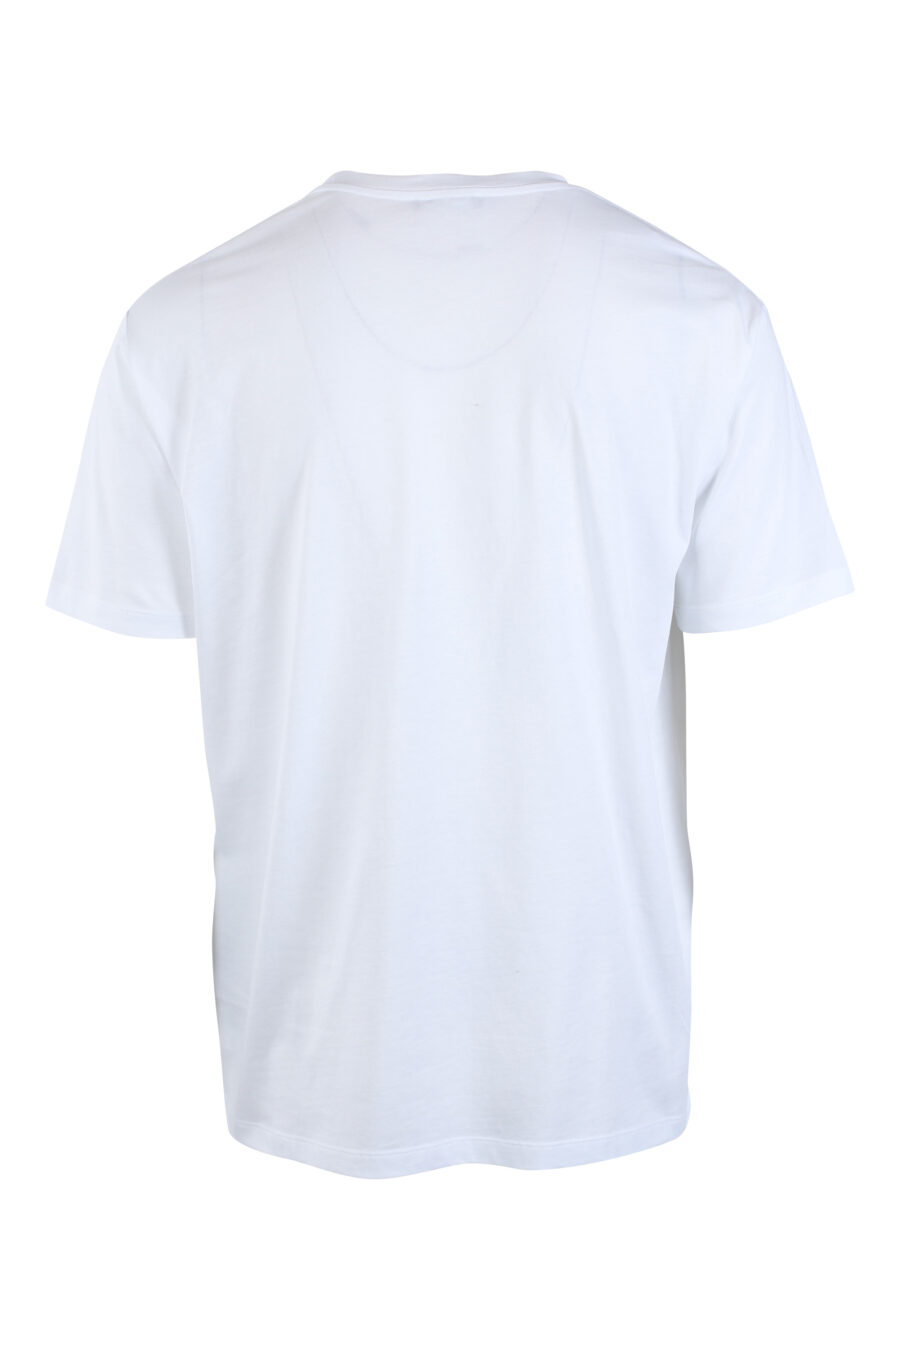 Balmain - Camiseta blanca con maxilogo negro 